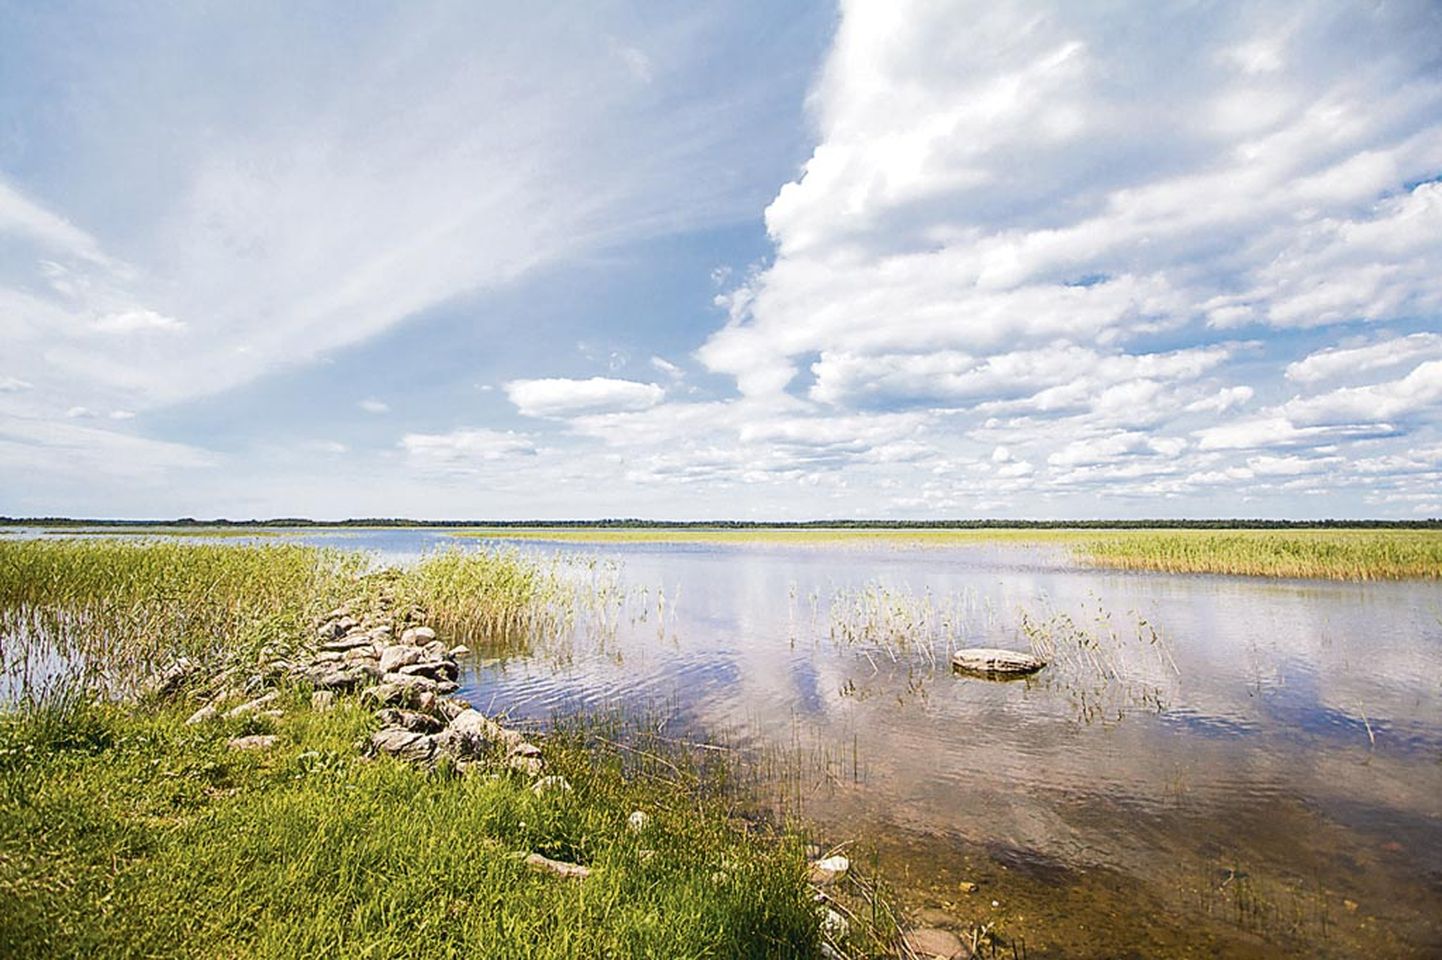 Tõhela (pildil) ja Ermistu järve looduskaitseala kaitsekorra eelnõu tuuakse teist korda avalikule arutelule. Enne seda aga vajavad Tõhela järve taime- ja linnuliigid inventuuri.